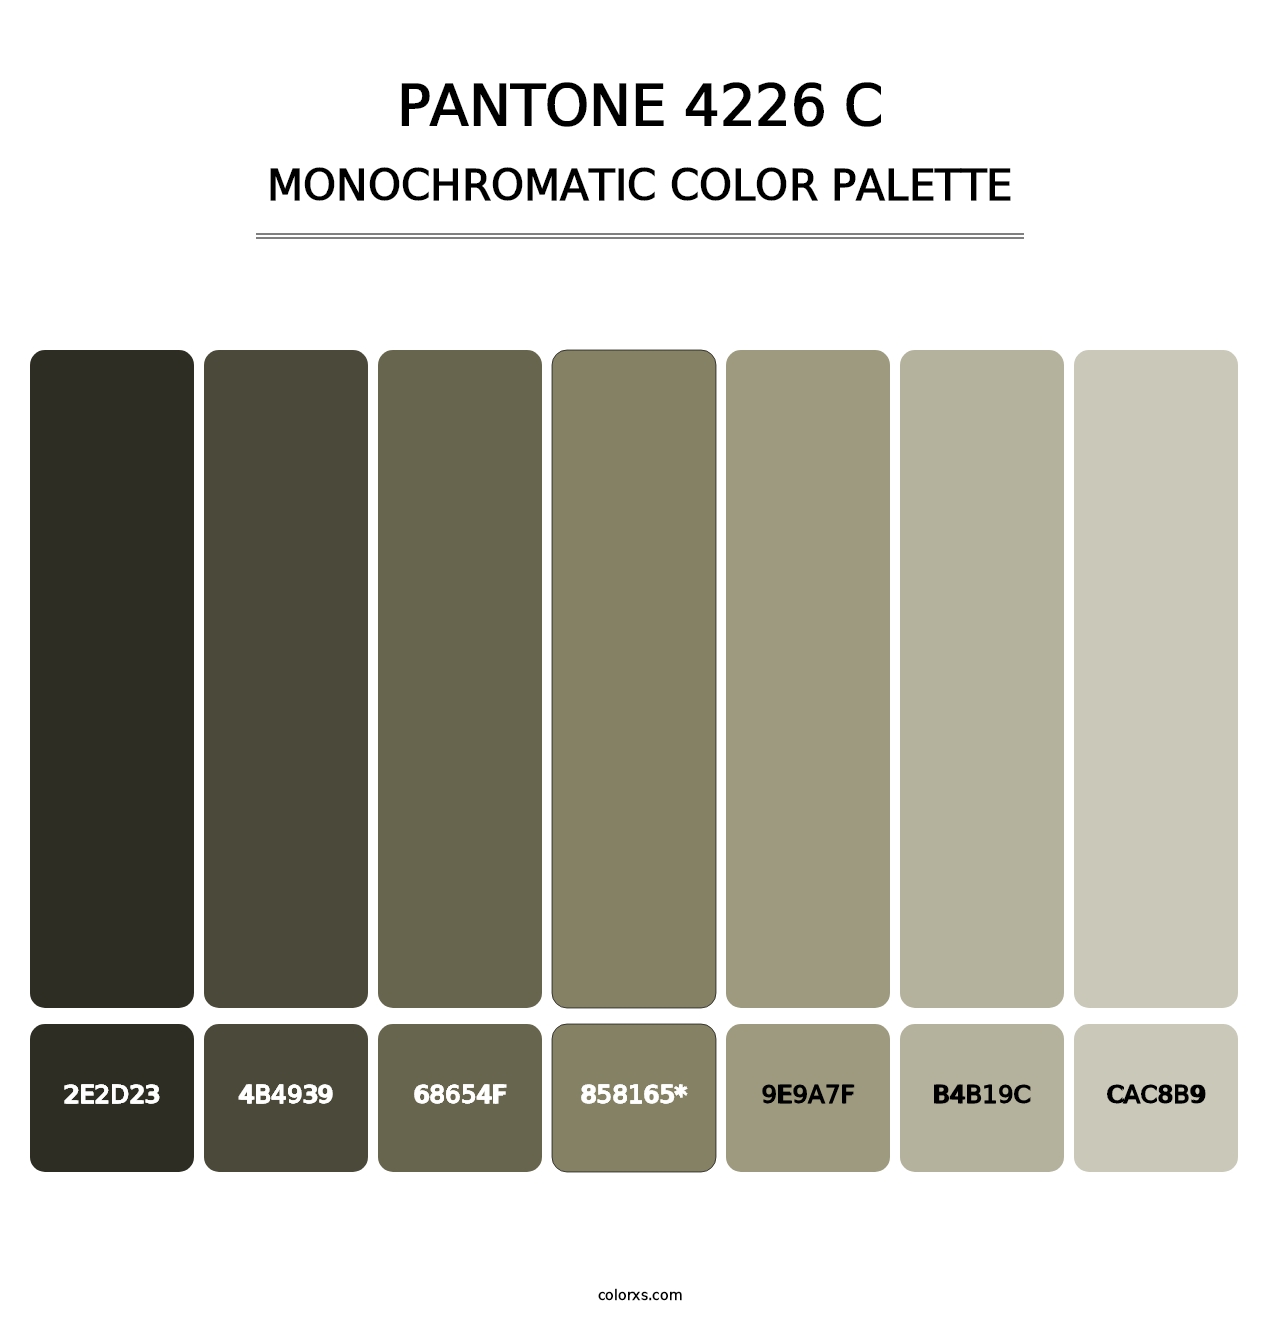 PANTONE 4226 C - Monochromatic Color Palette